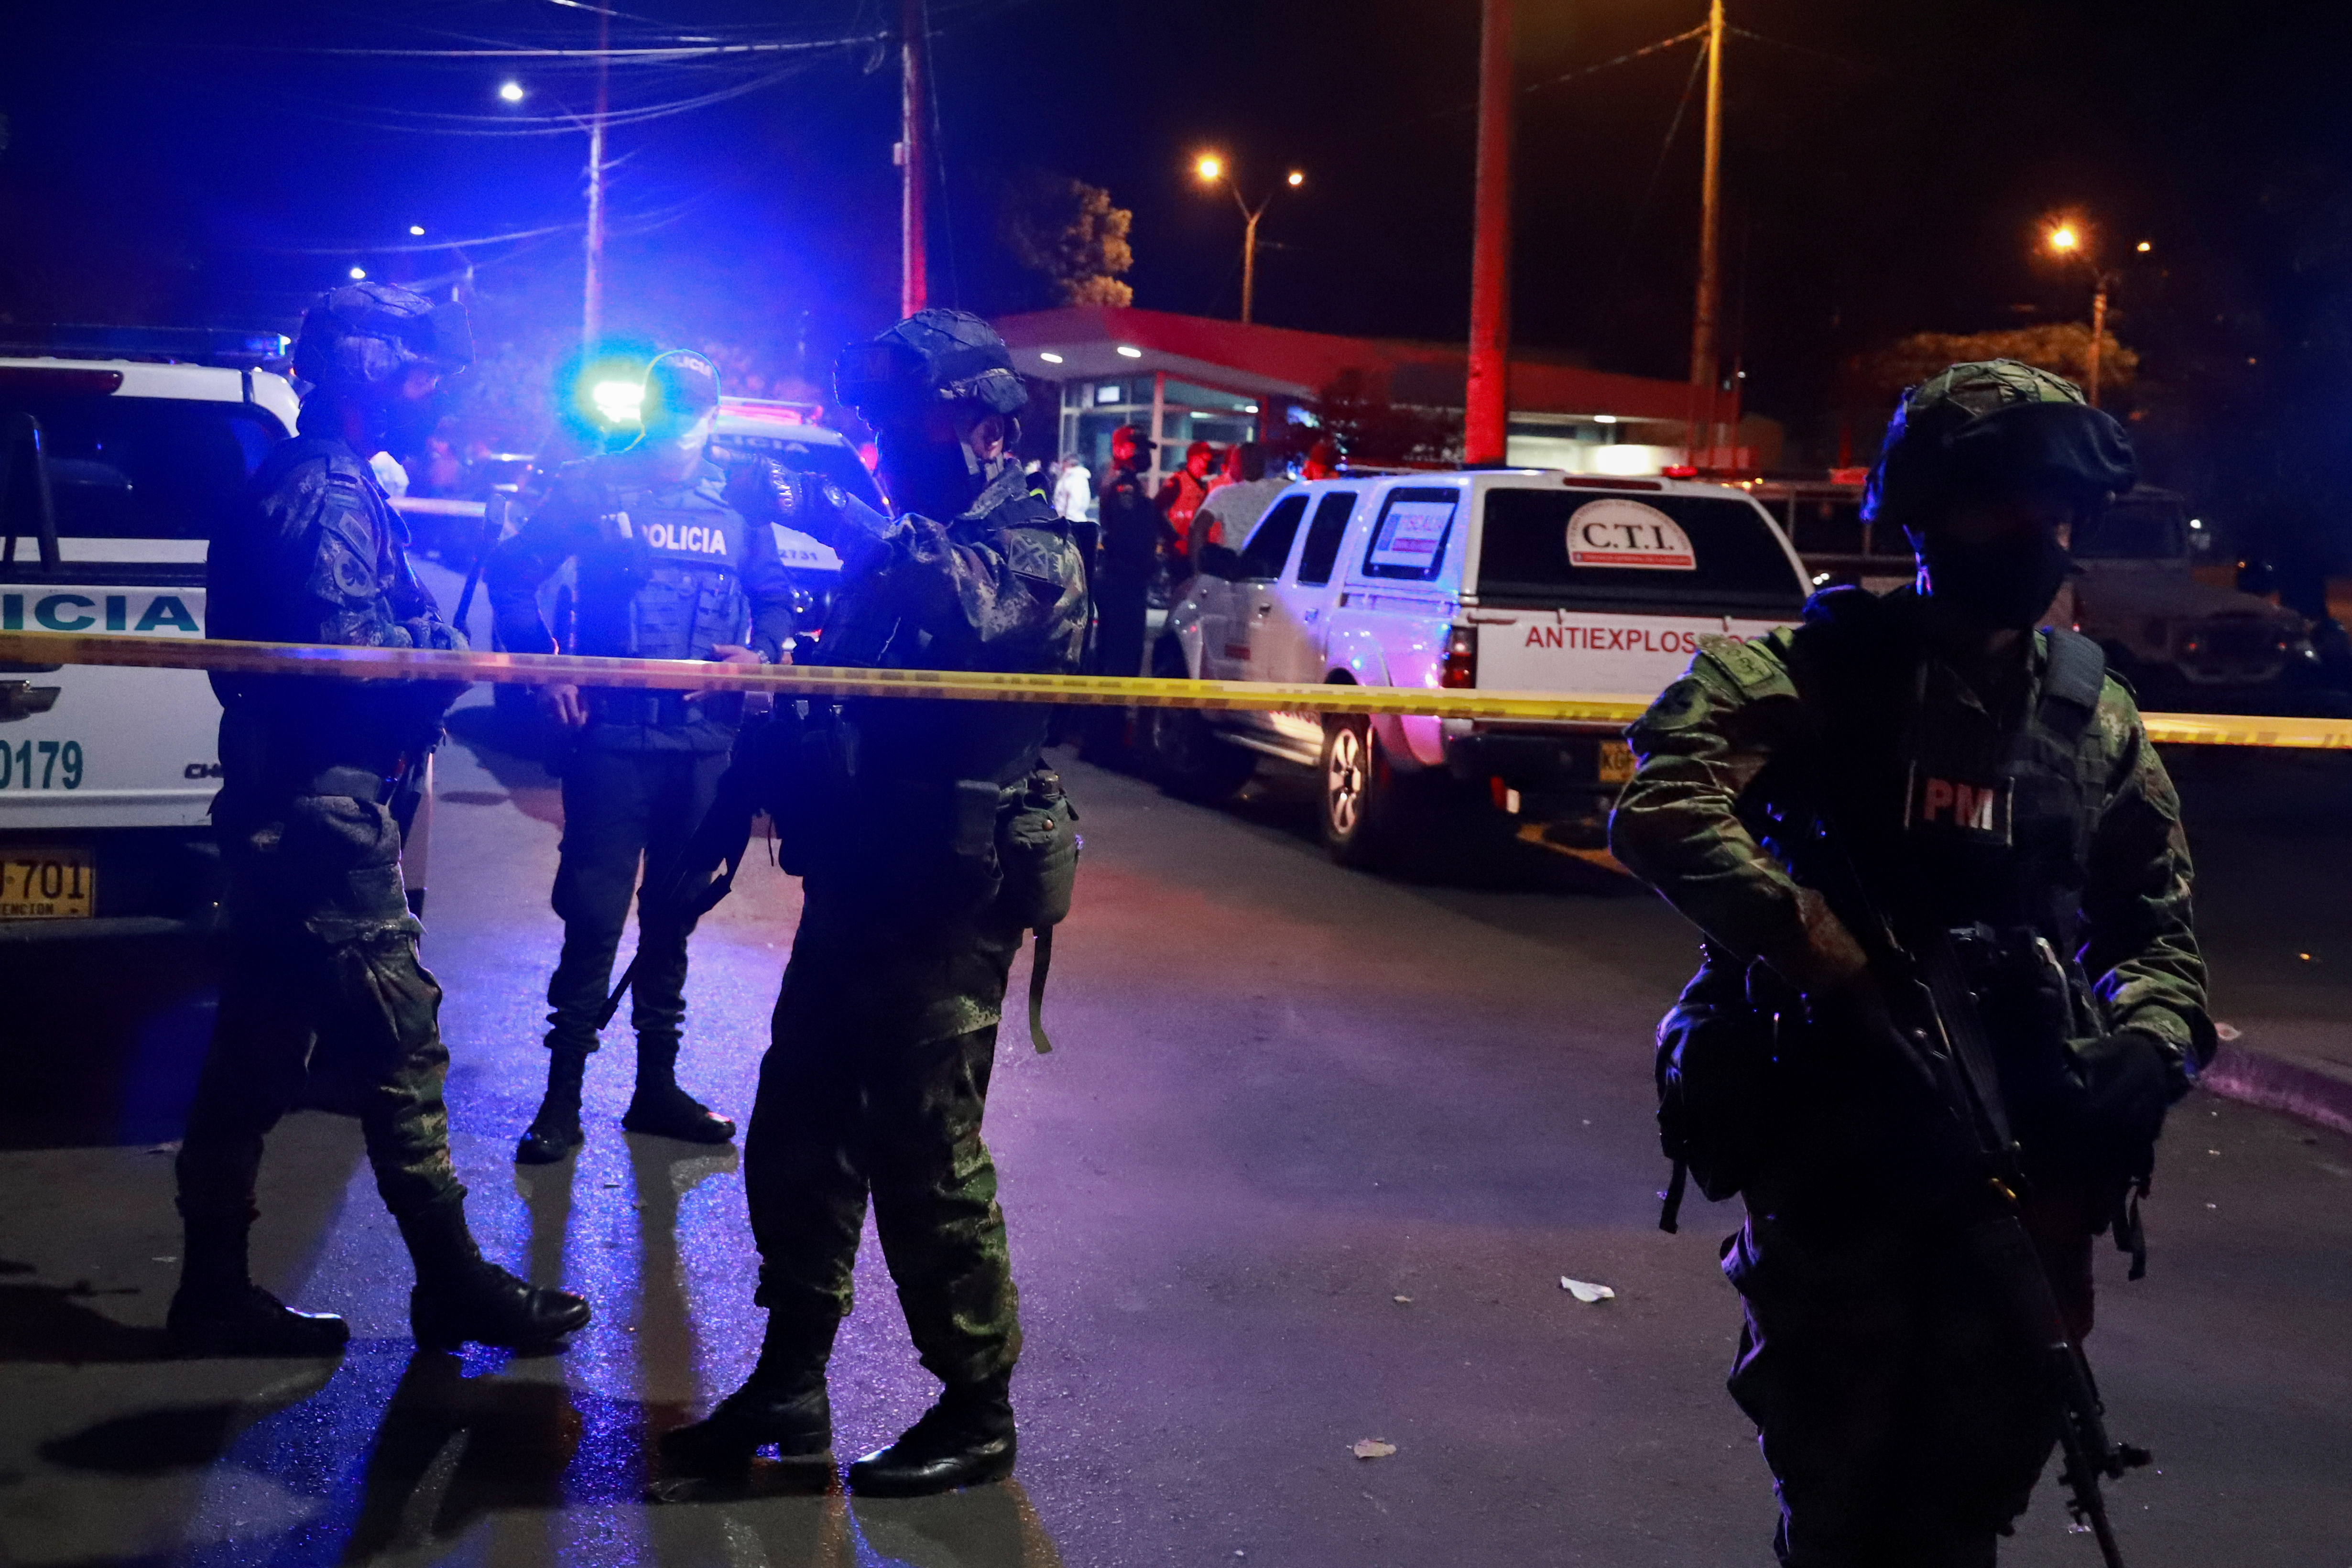 Durante el sepelio de los 5 jóvenes en Llano Verde en Cali, fue lanzada una granada a una estación de policía. Cali, Colombia August 13, 2020. REUTERS/Juan Bautista Diaz NO RESALES. NO ARCHIVES